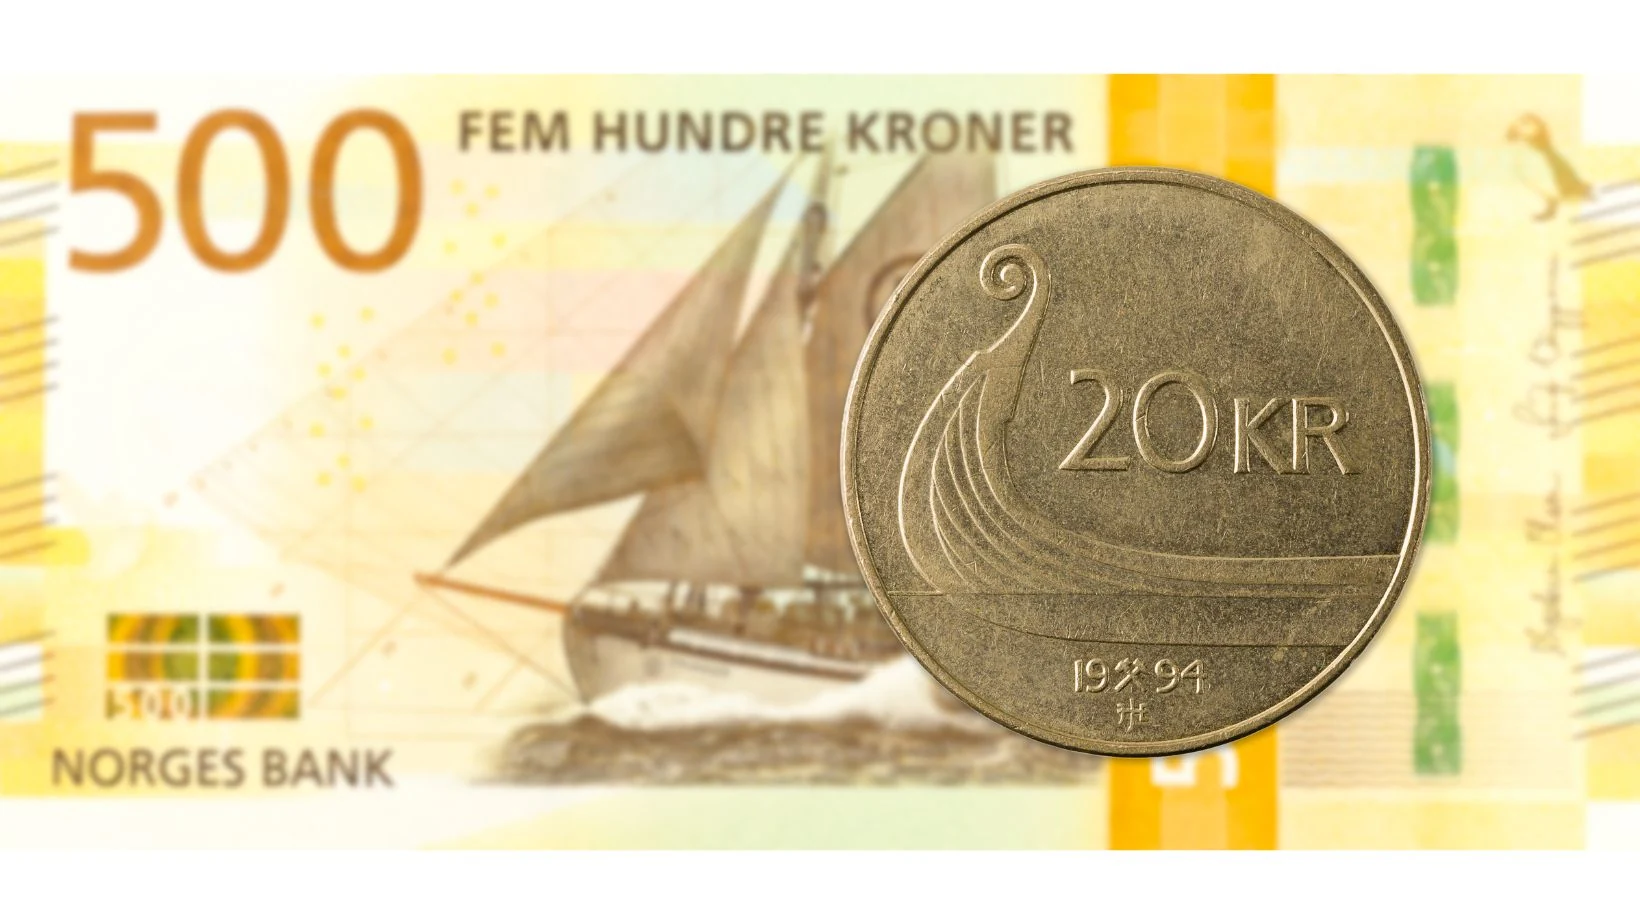 Nota de 500 NOK e moeda de 20 NOK